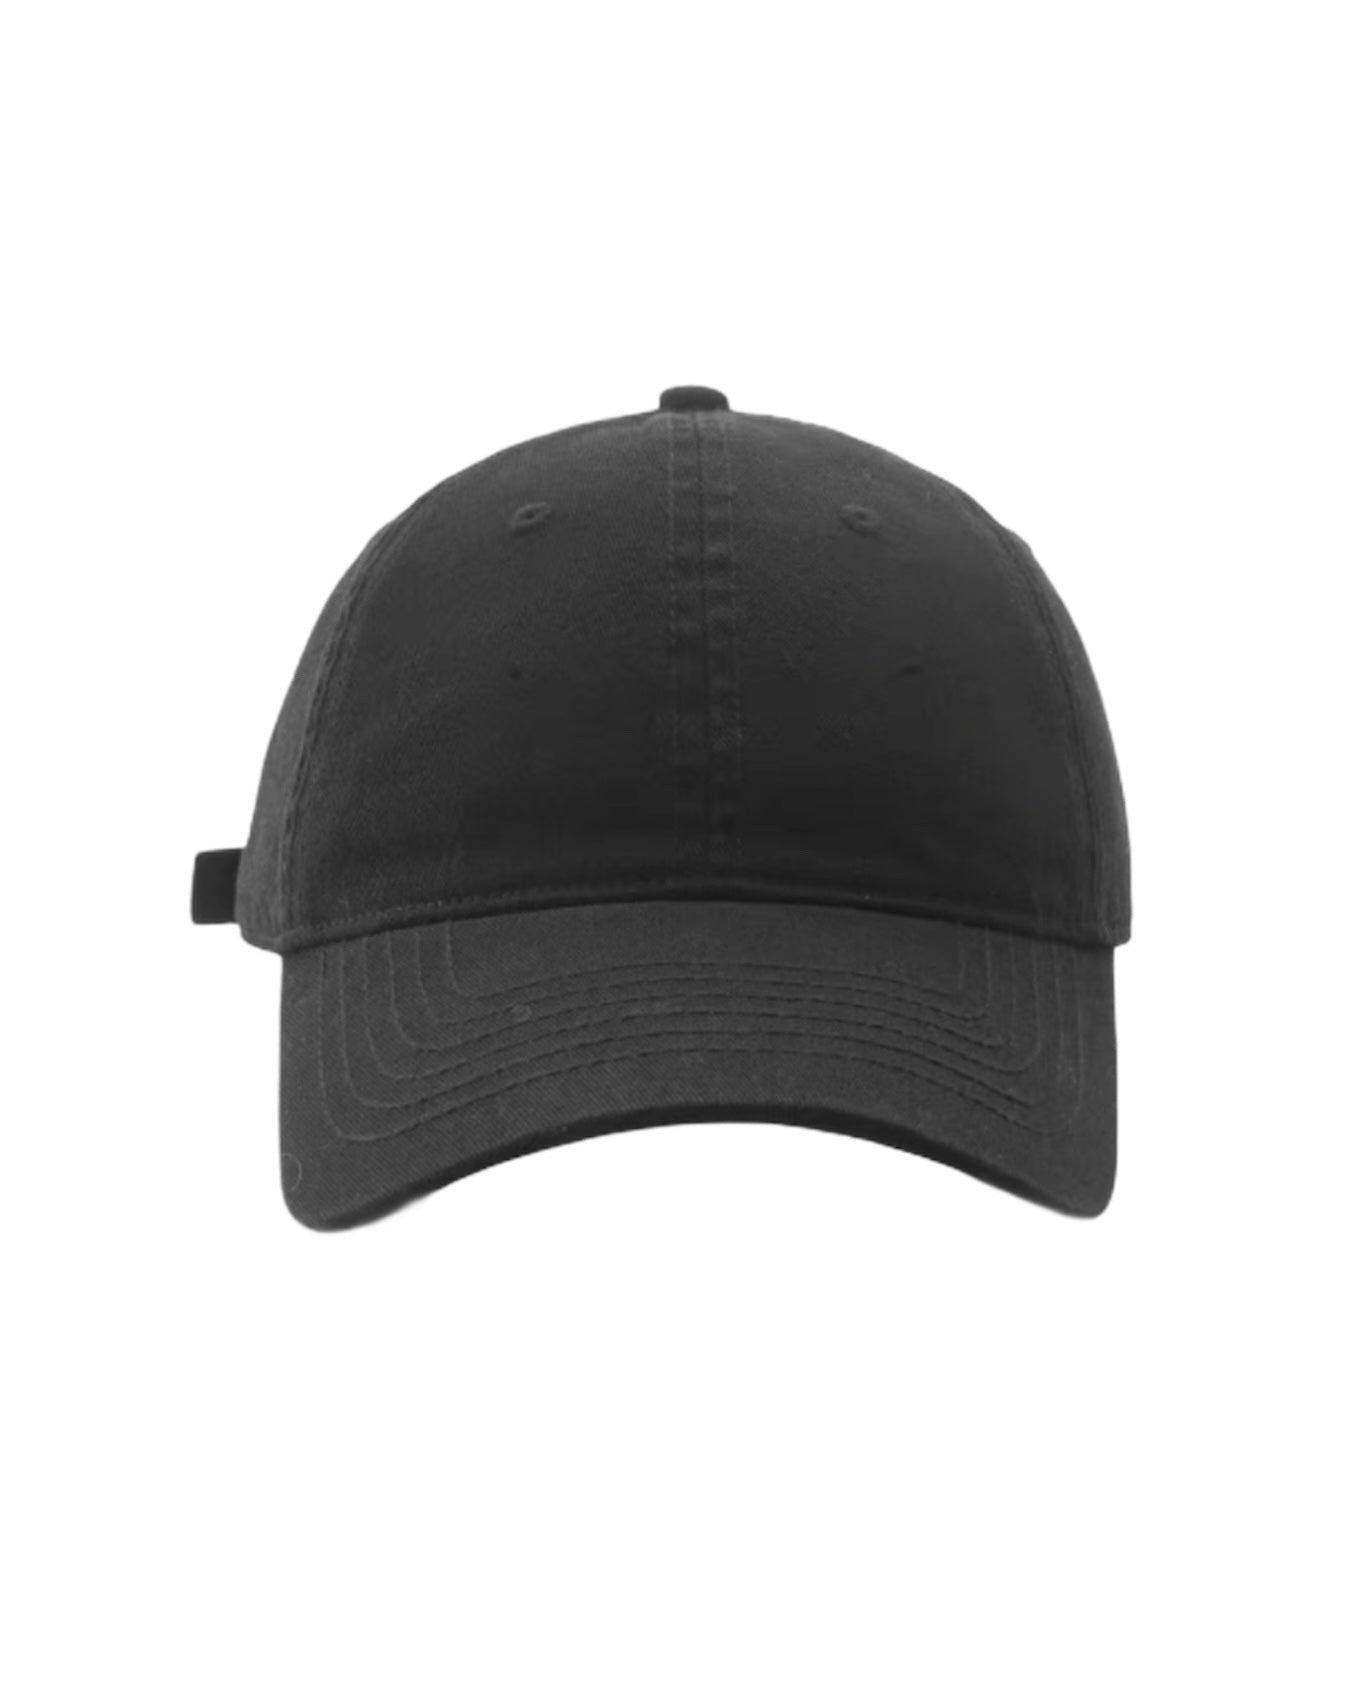 黑色帆布帽*預購*